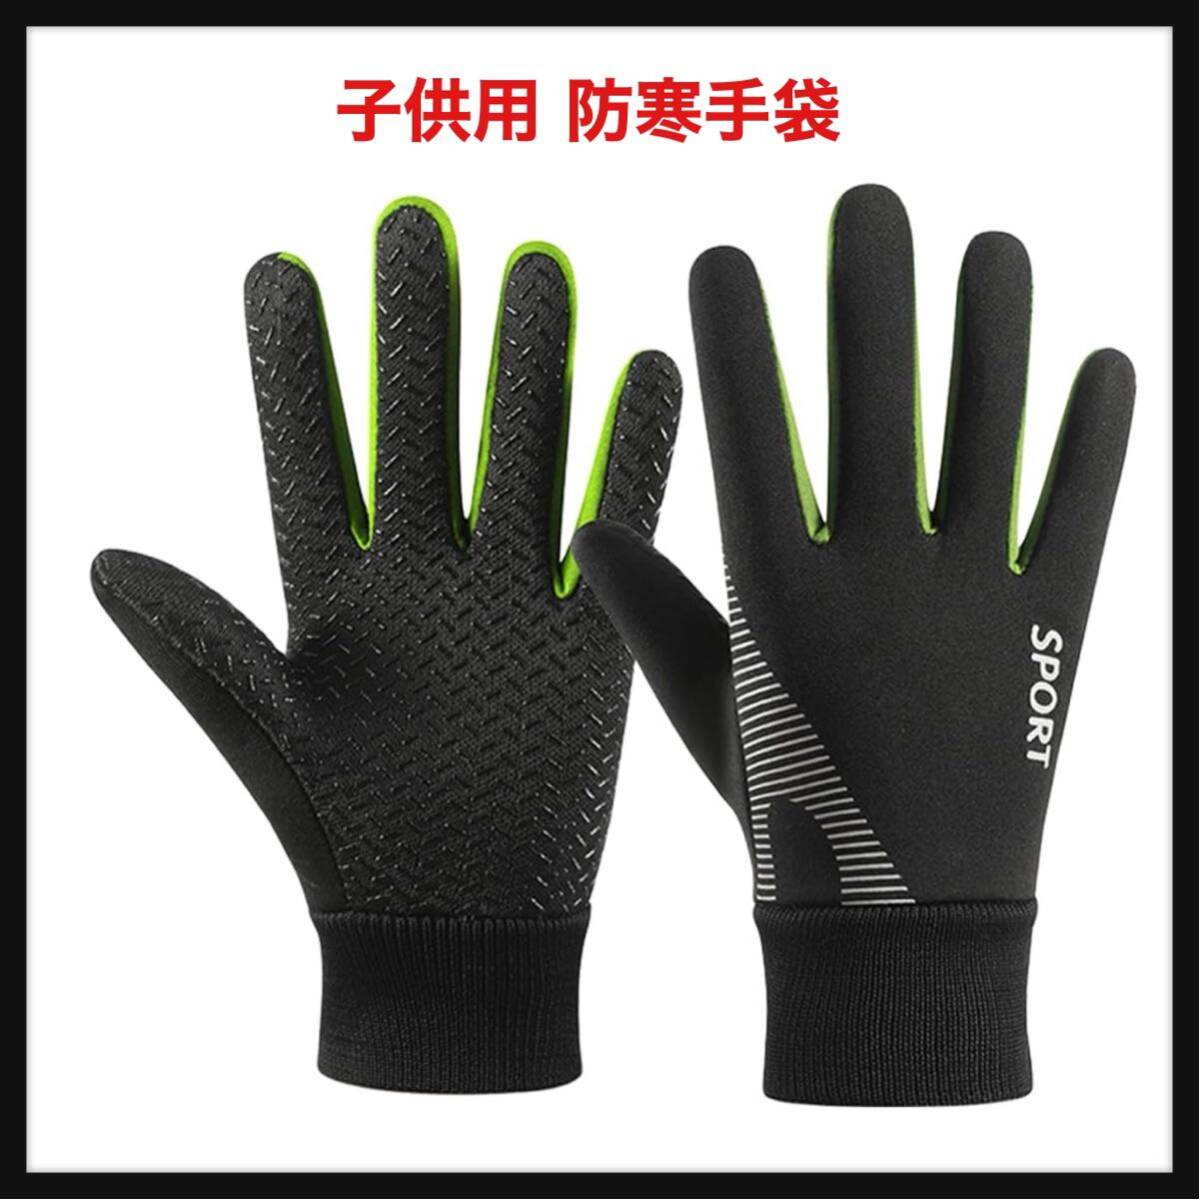 [ вскрыть только ]Gokamoi* защищающий от холода перчатка детский защищающий от холода перчатки Kids [ обратная сторона ворсистый * водоотталкивающая отделка * предотвращение скольжения * выдерживающий износ .] футбол перчатки Junior . способ теплоизоляция 